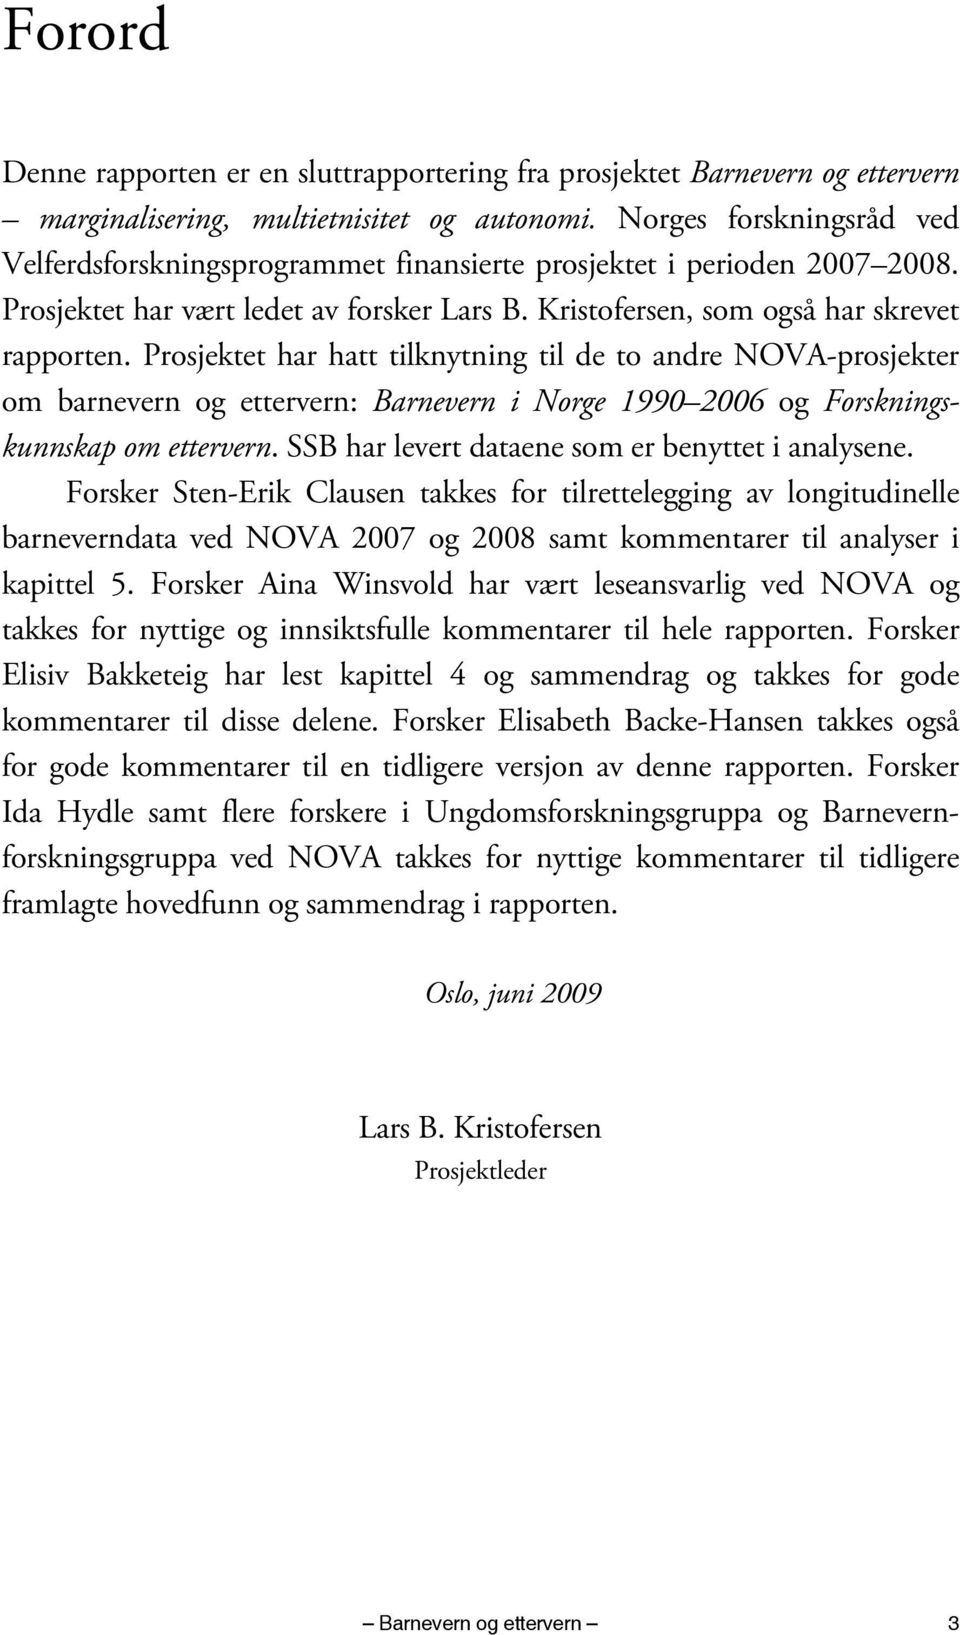 Prosjektet har hatt tilknytning til de to andre NOVA-prosjekter om barnevern og ettervern: Barnevern i Norge 1990 2006 og Forskningskunnskap om ettervern.